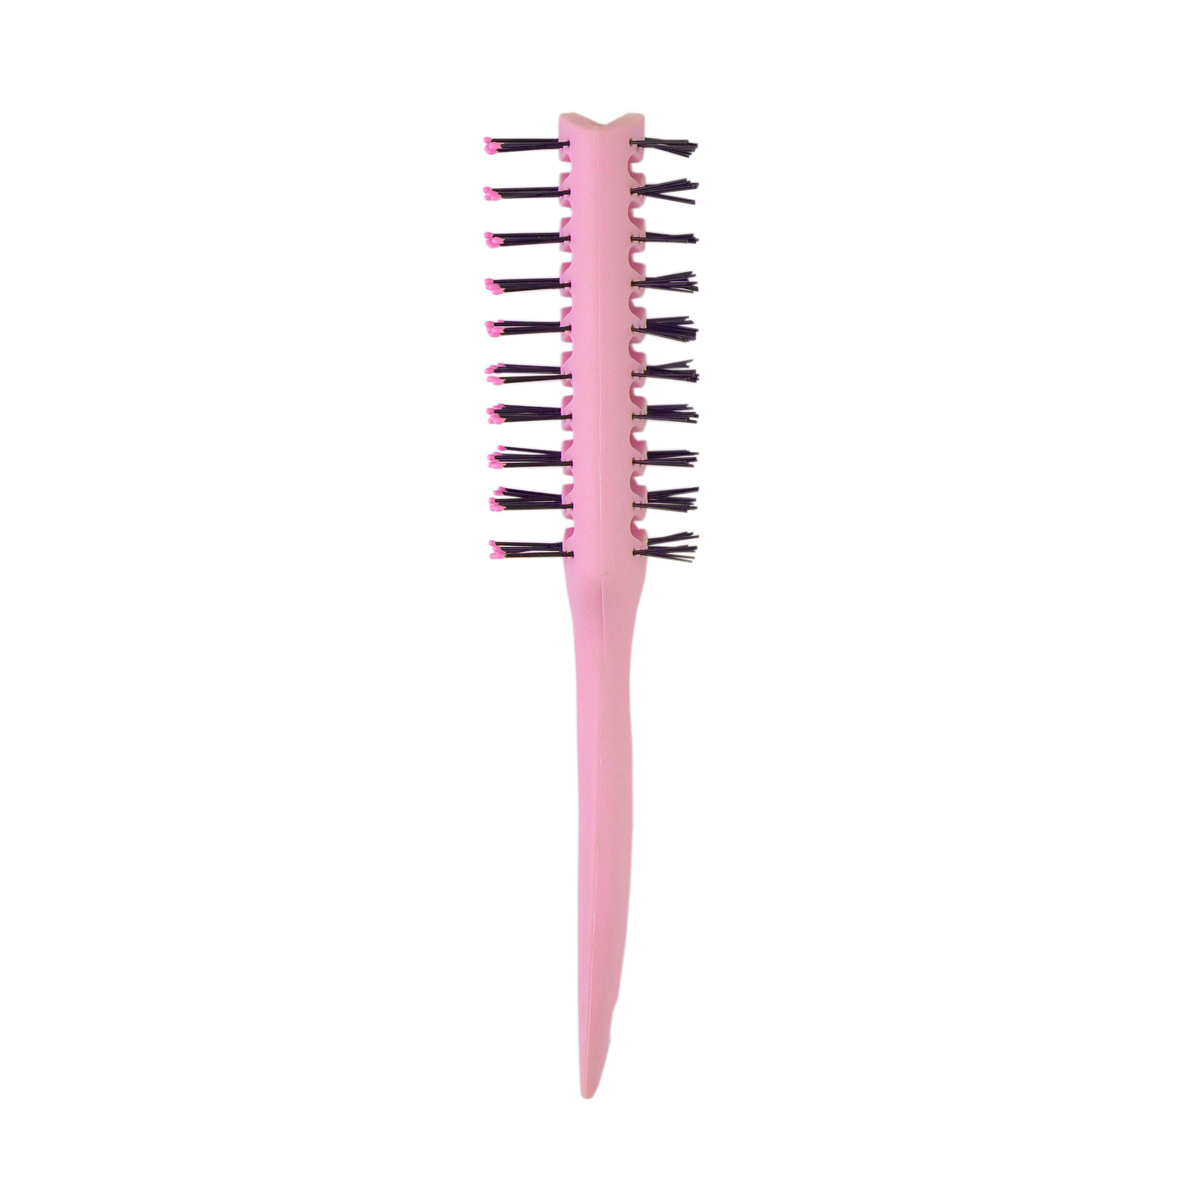 Расчёска вентиляционная LEI 170 розовая расческа nice view каркасная для укладки волос с пластиковыми зубьями l 23 розовая